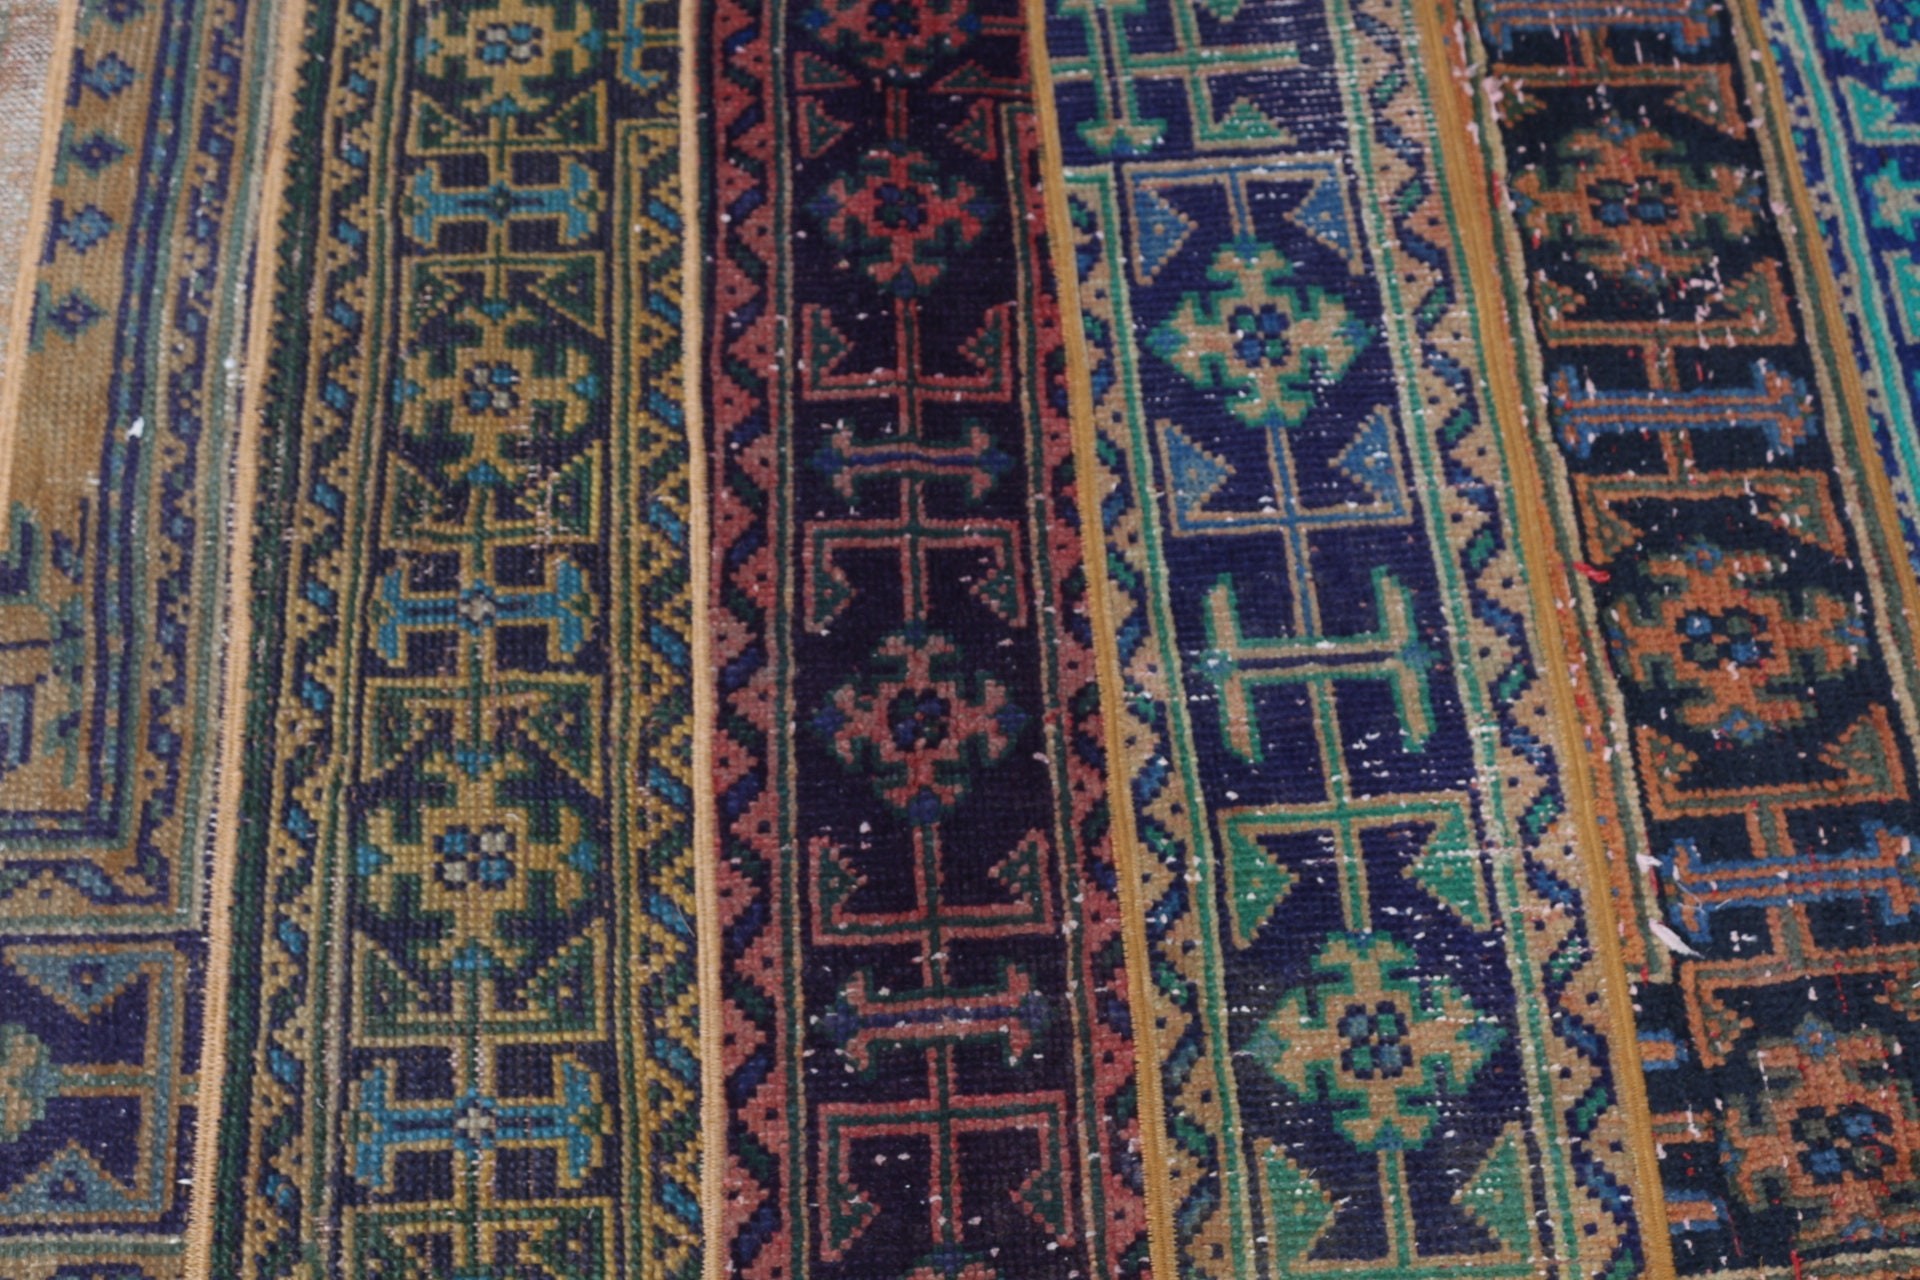 Turkish Rug, Vintage Rugs, Bedroom Rug, 3x4.9 ft Small Rug, Oriental Rug, Moroccan Rugs, Rugs for Bedroom, Entry Rug, Green Oriental Rugs